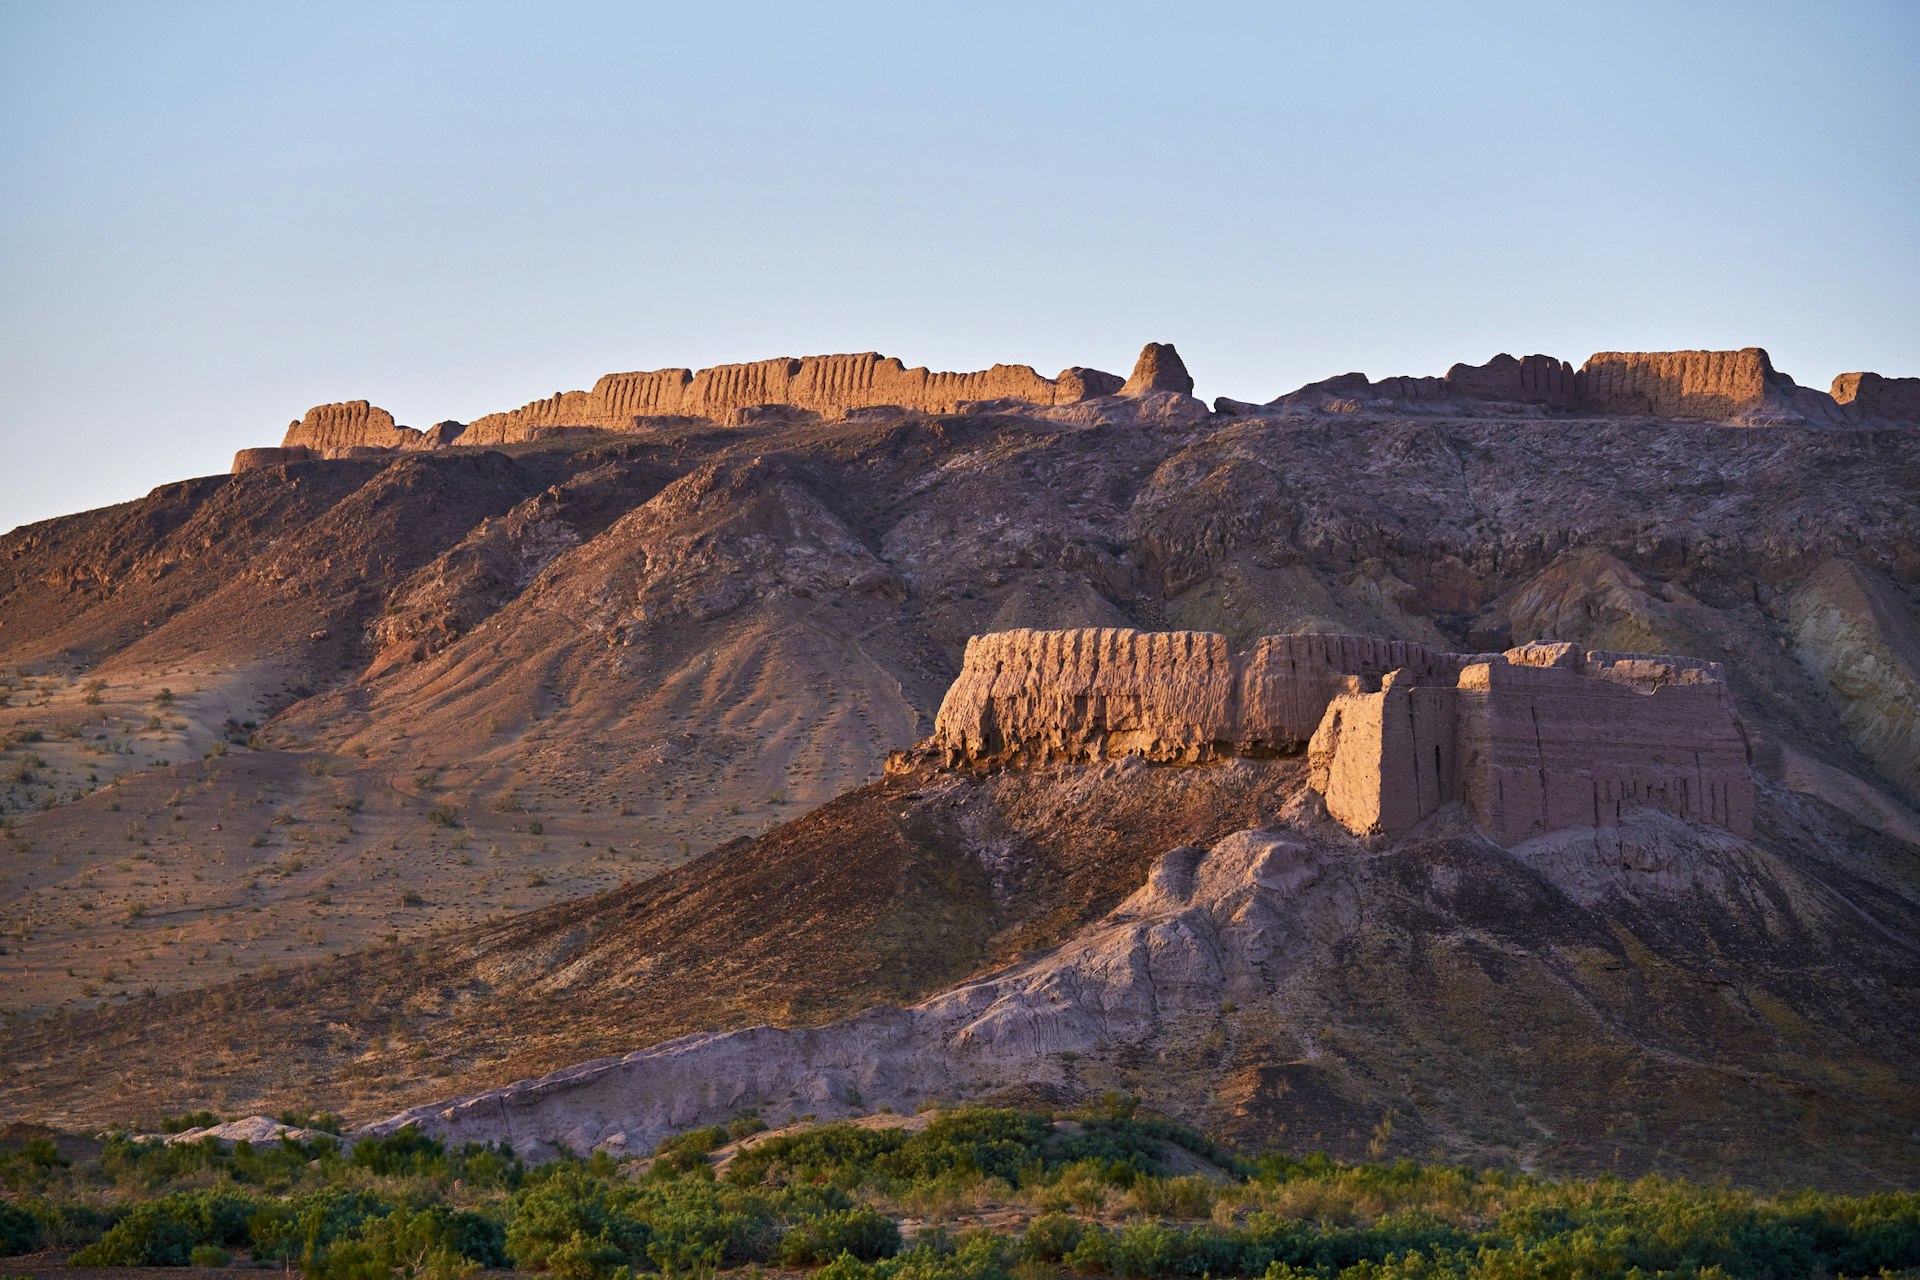 Разрушенная средневековая крепость из красного камня стоит на вершине скалы в пустынной местности.